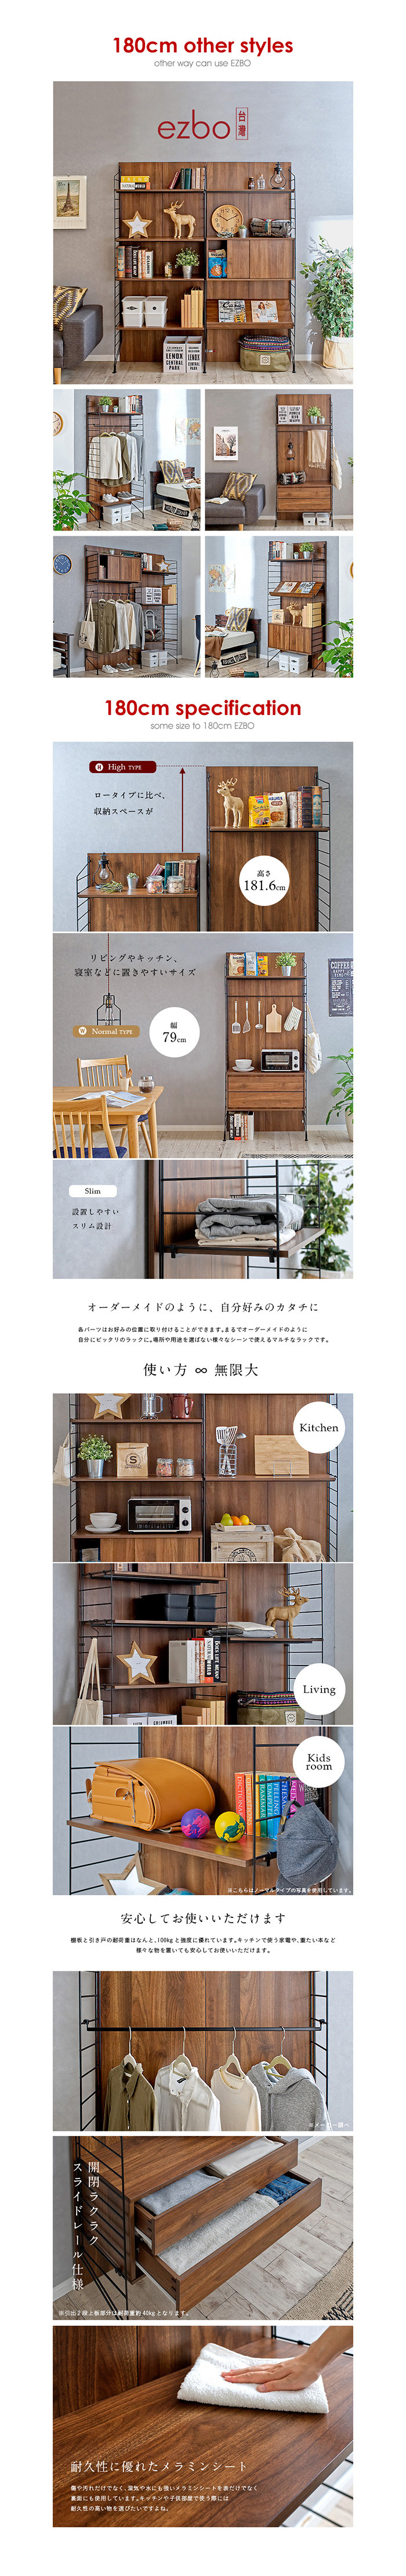 【機能組裝傢俱】ezbo卡爾頓系列/層架式收納/書桌/餐櫃180cm(DIY自行組裝)/ H&D 東稻家居